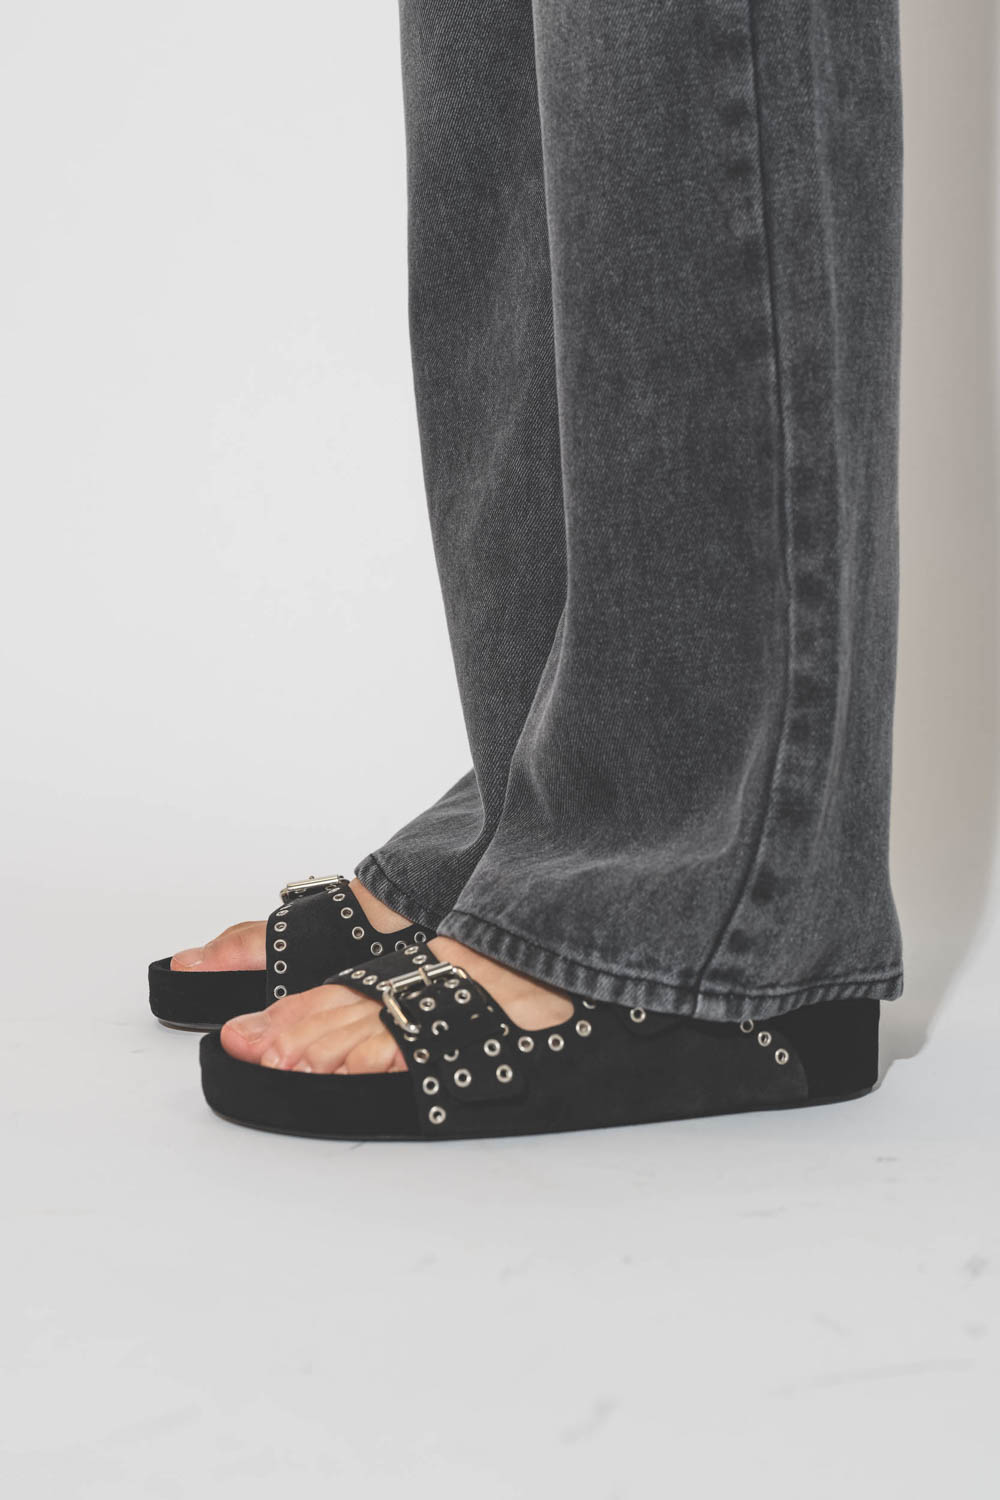 Sandales ouvertes en cuir suédé noir délavé et clouté Lennyo Isabel Marant. Porté avec un jean gris fluide.